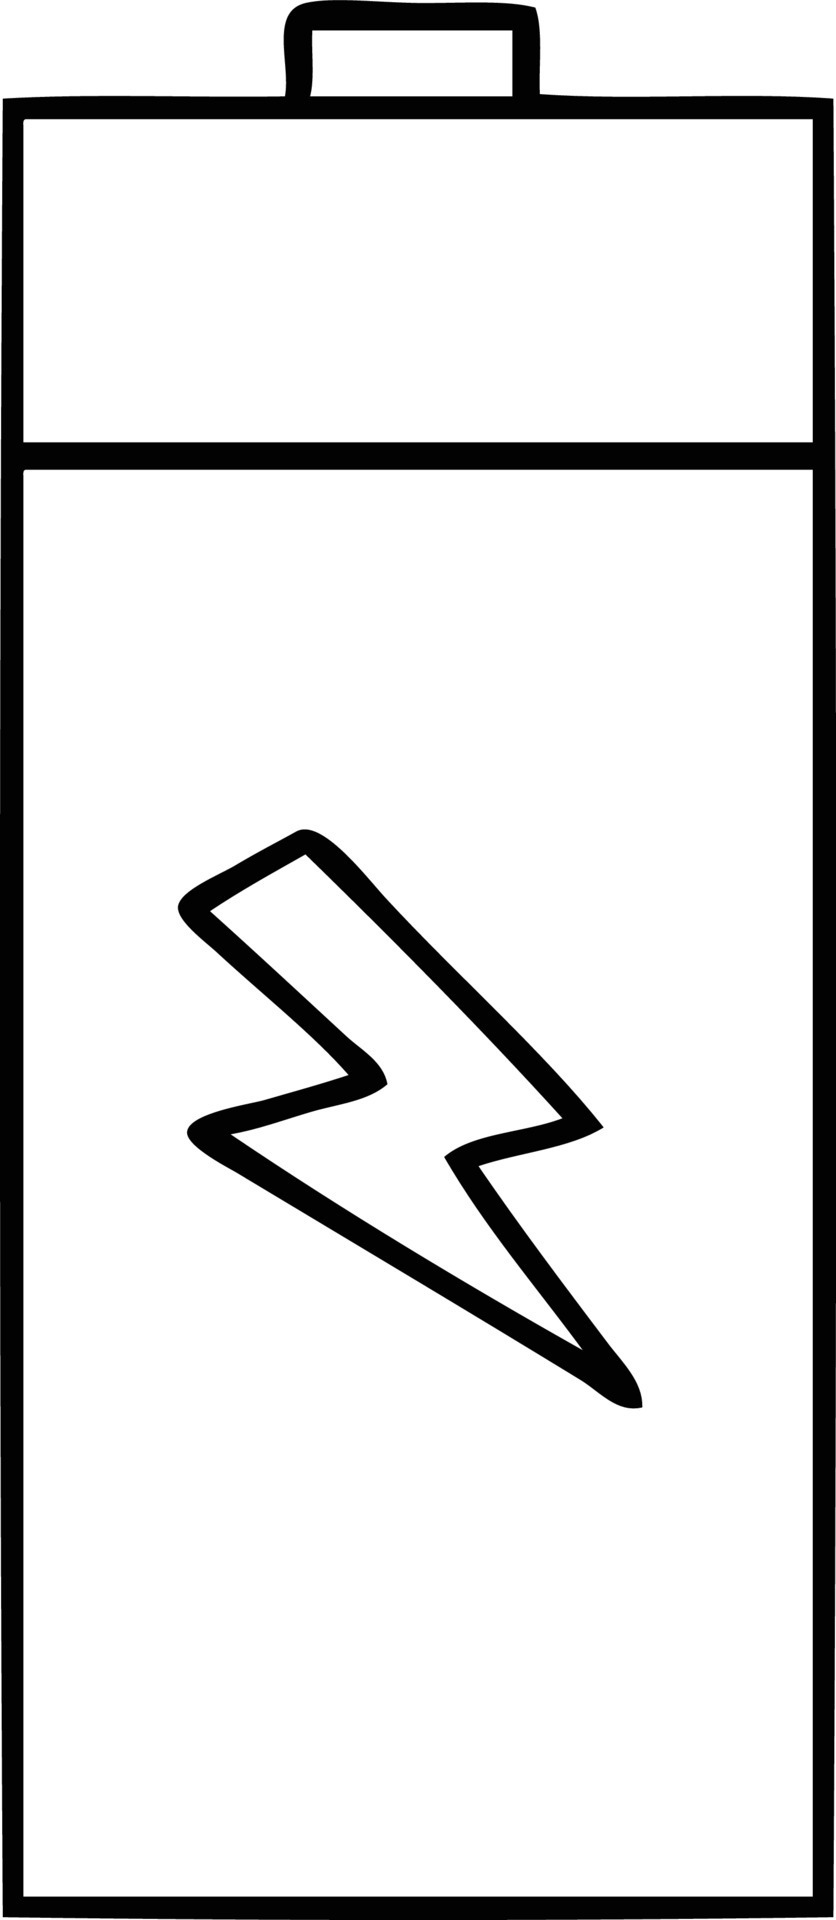 batería eléctrica de dibujos animados de dibujo lineal 8778014